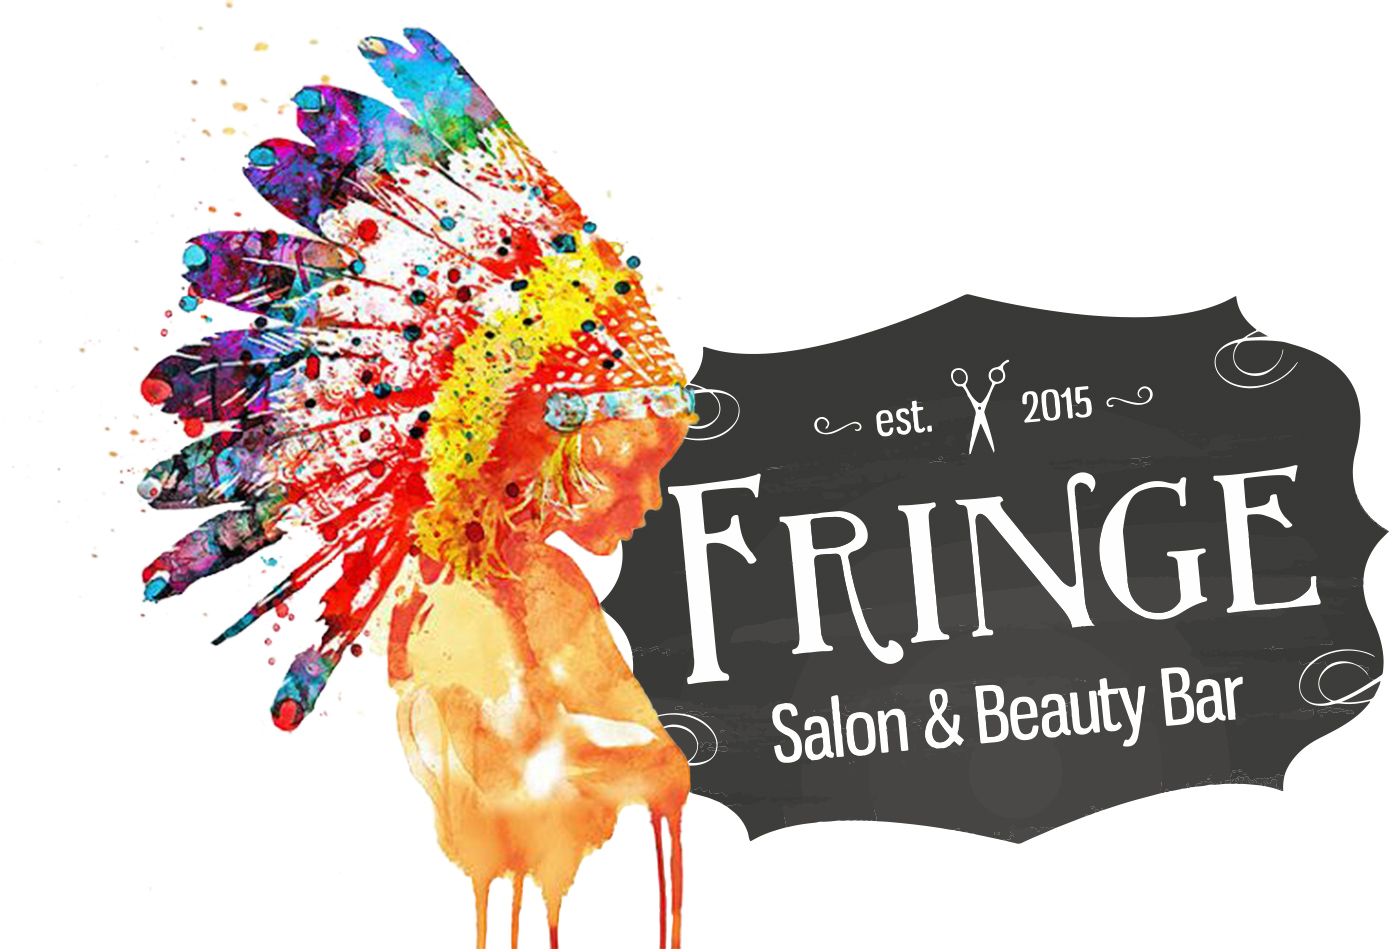 Fringe Salon & Beauty Bar